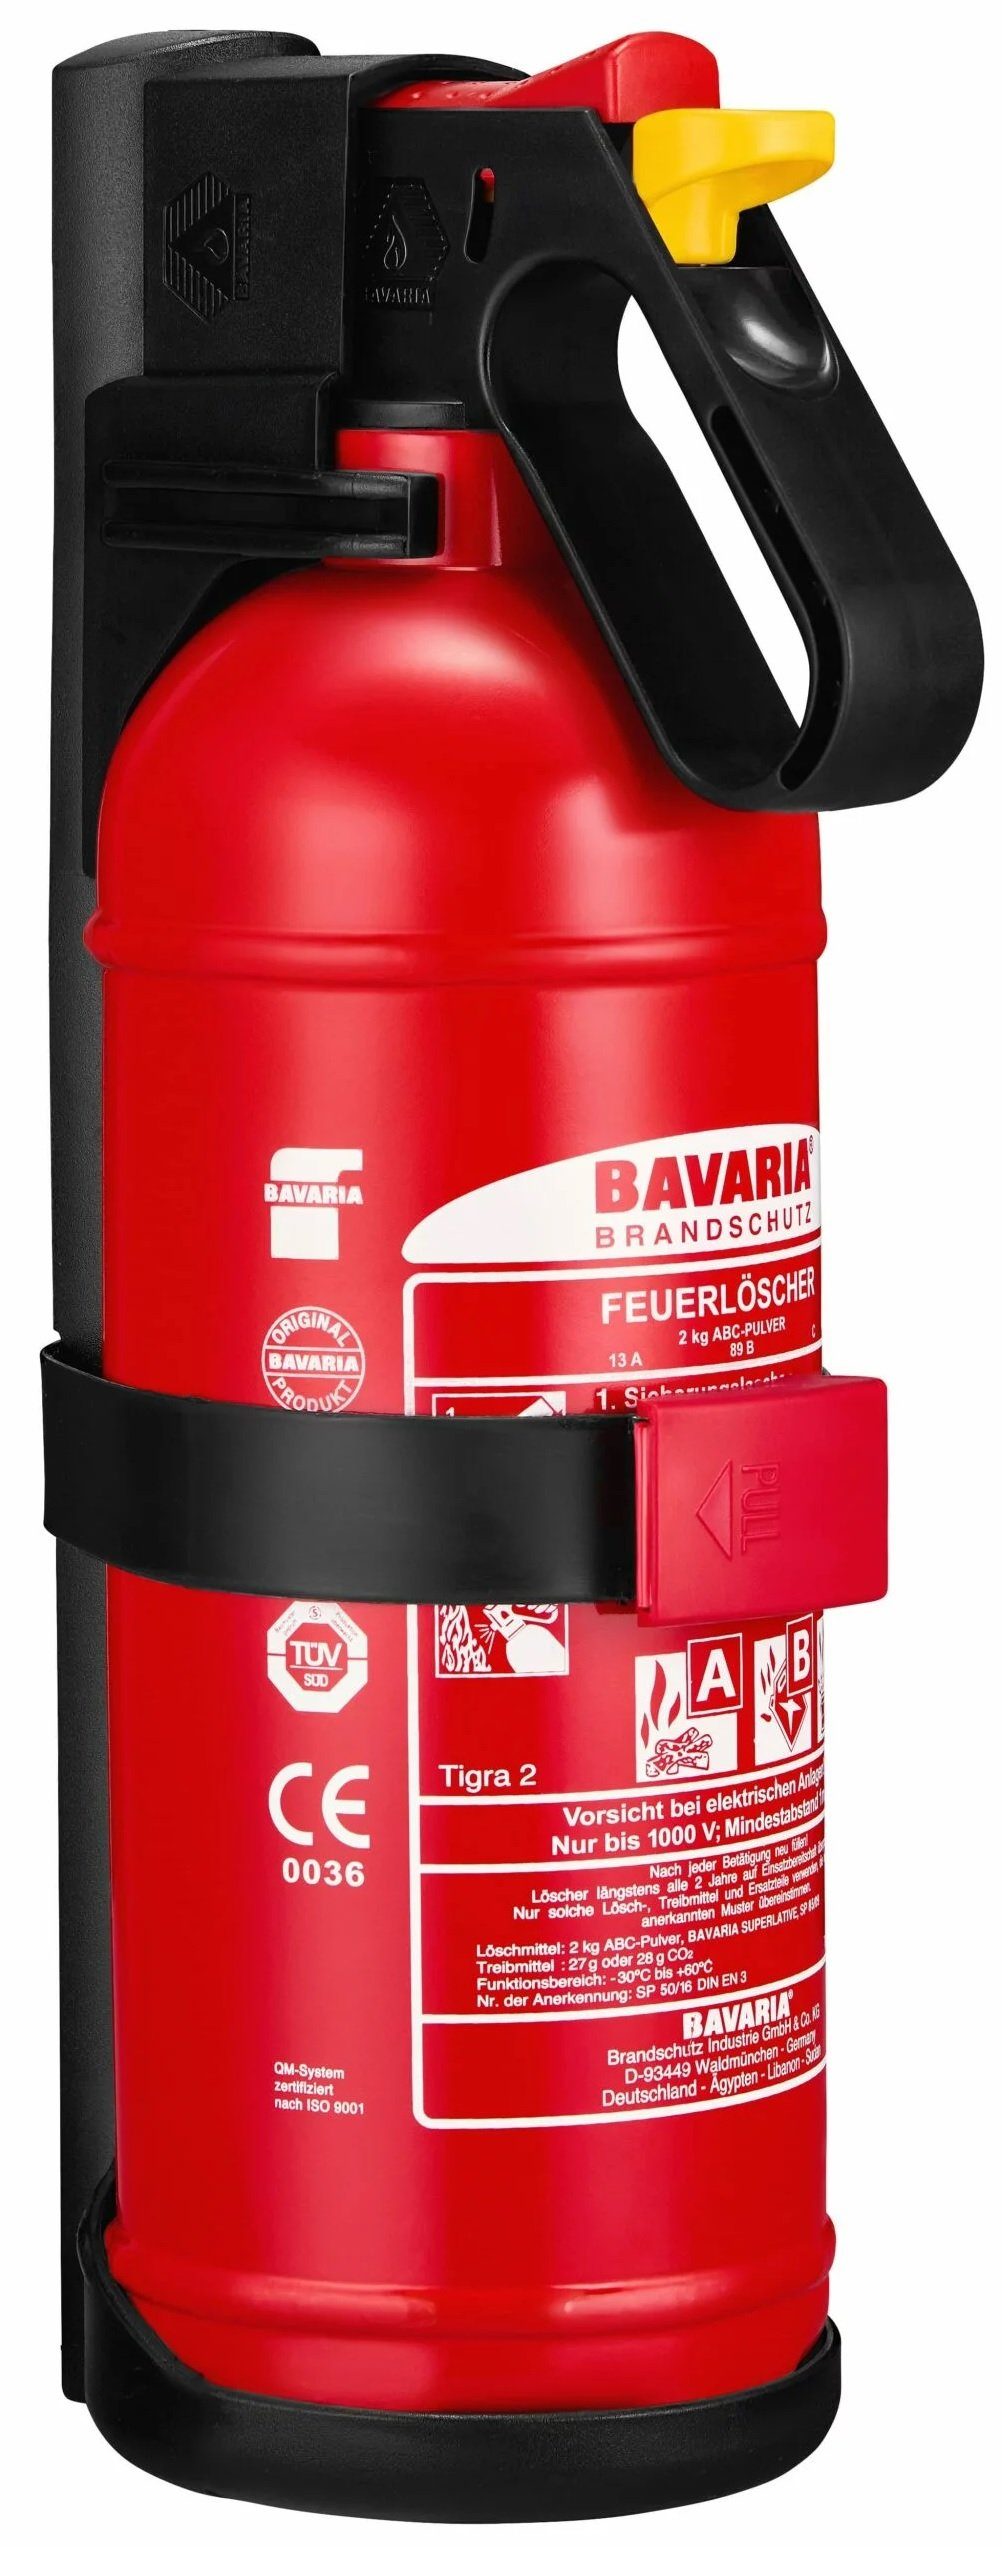 BAVARIA Brandschutz Pulver-Feuerlöscher Tigra 2, ABC-Pulver, inkl. Wandhalterung / KFZ-Halterung